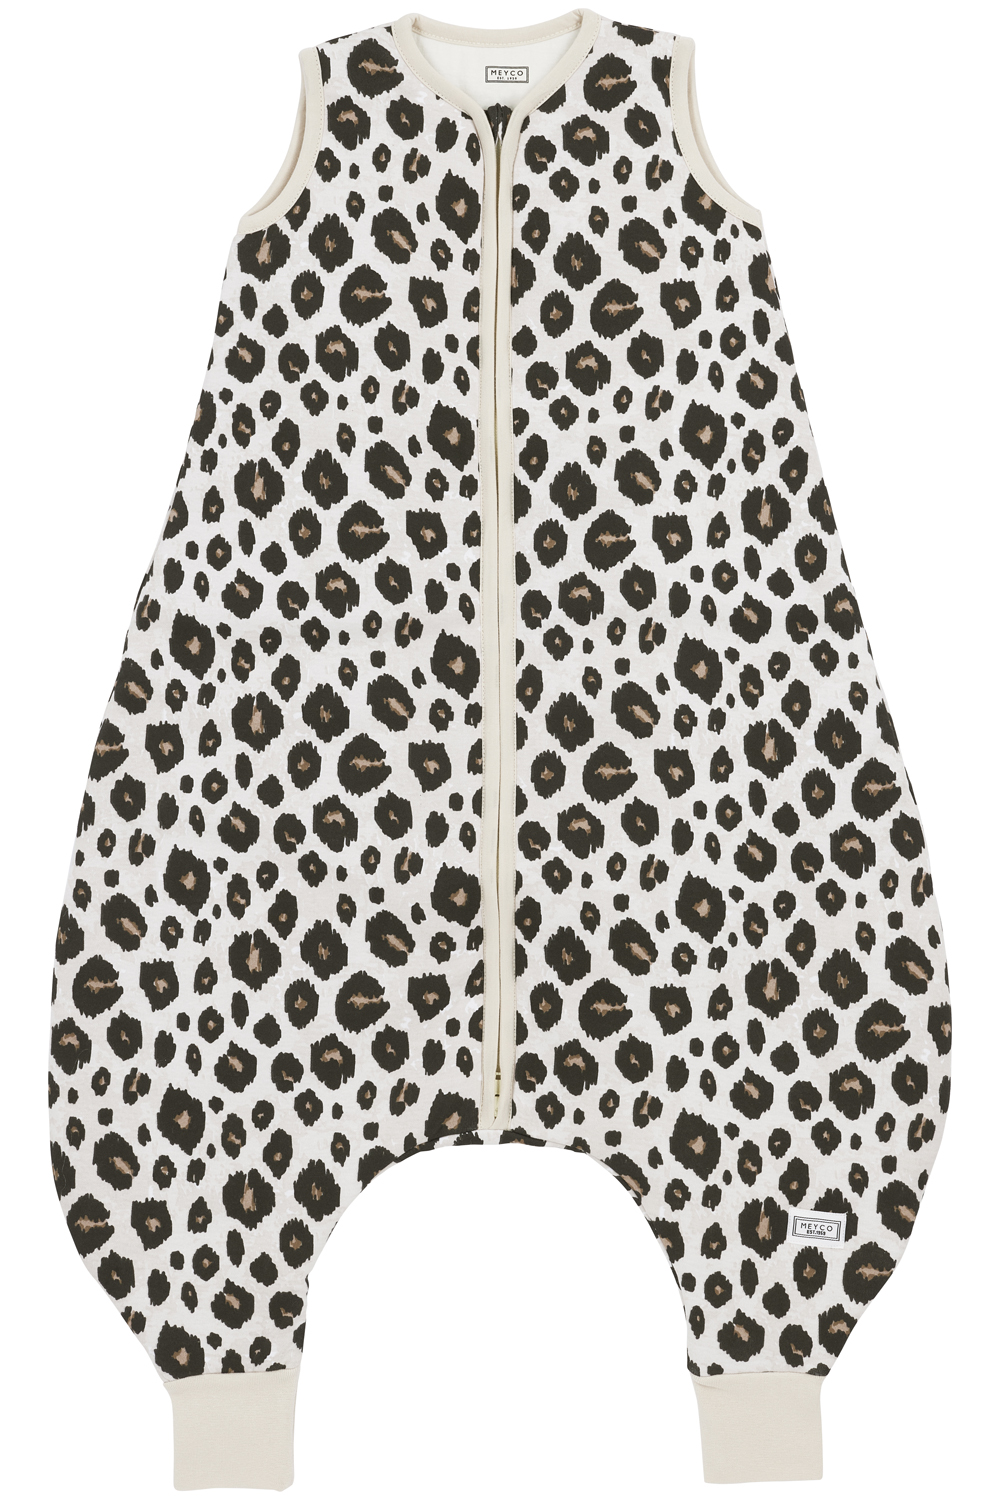 Baby Sleeping bag Jumper Leopard - Sand Melange - 104cm